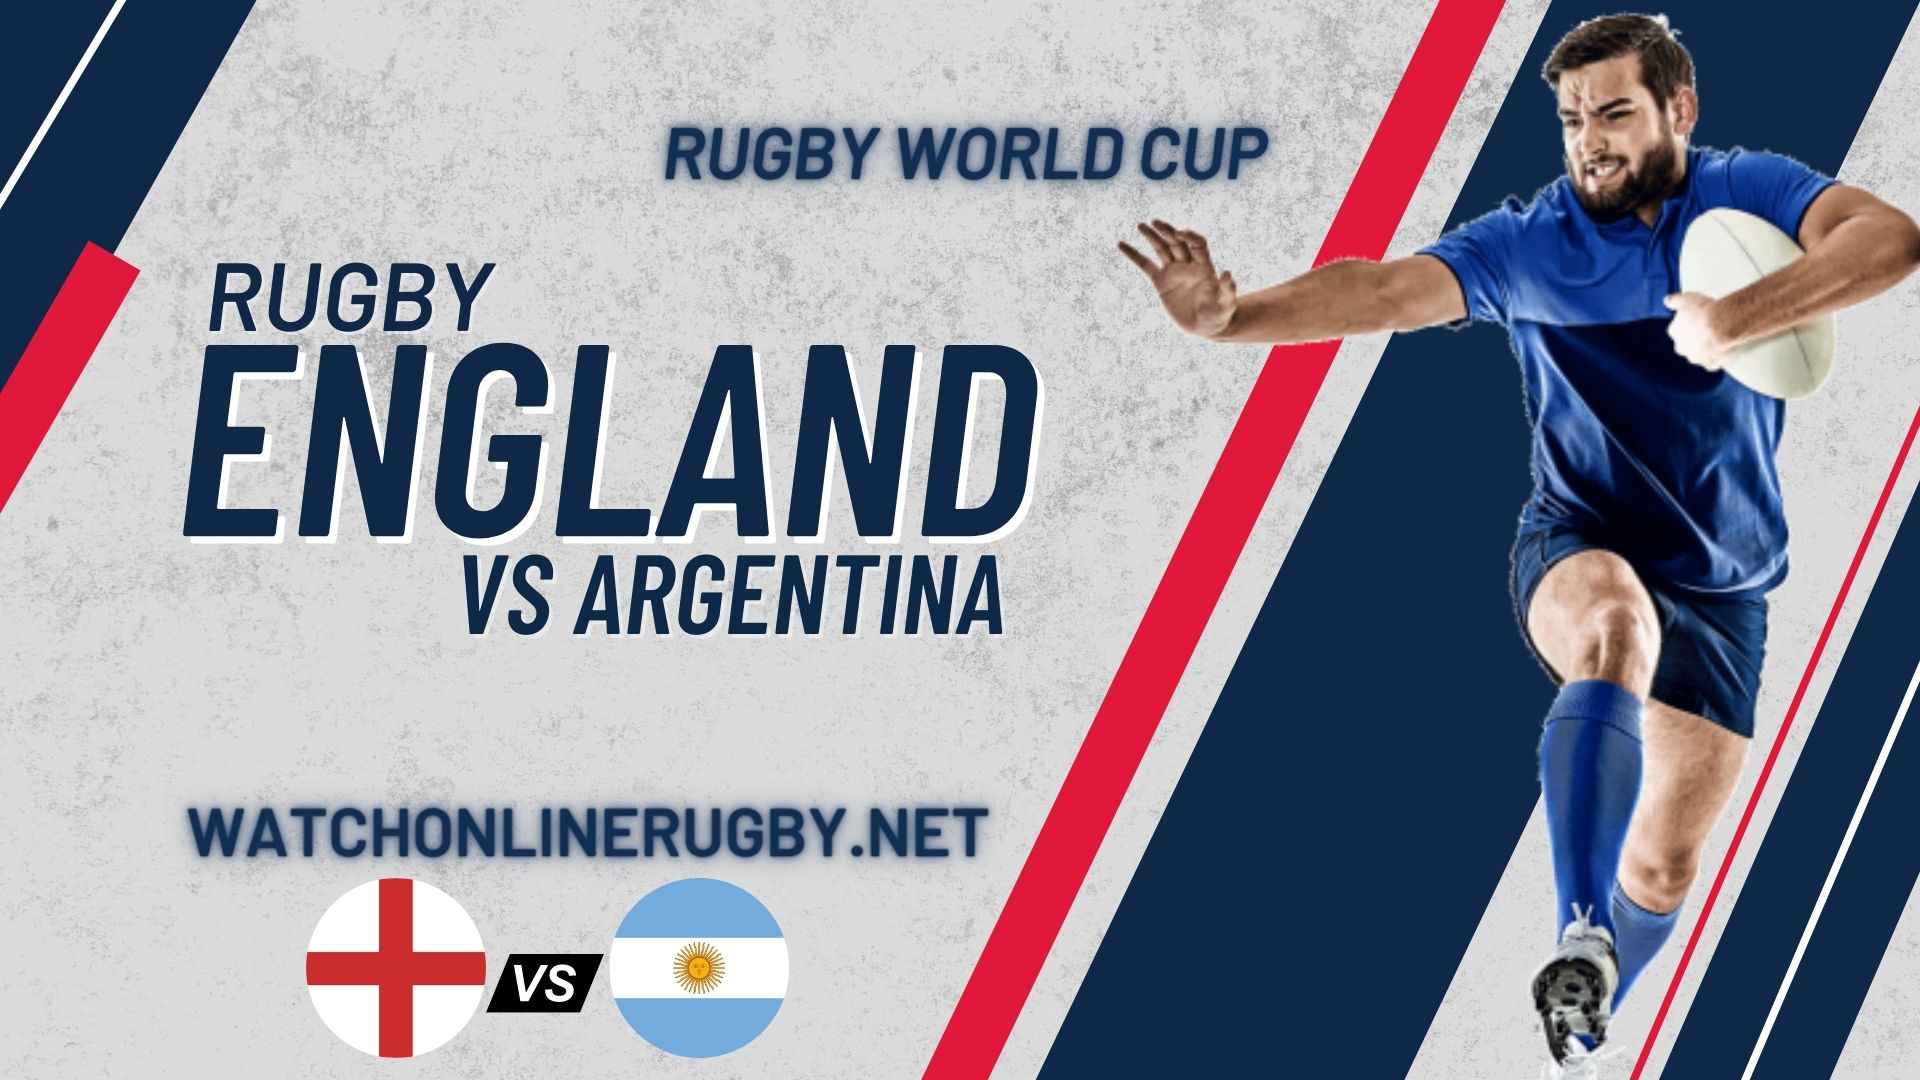 RWC 2019 England VS Argentina Live Stream